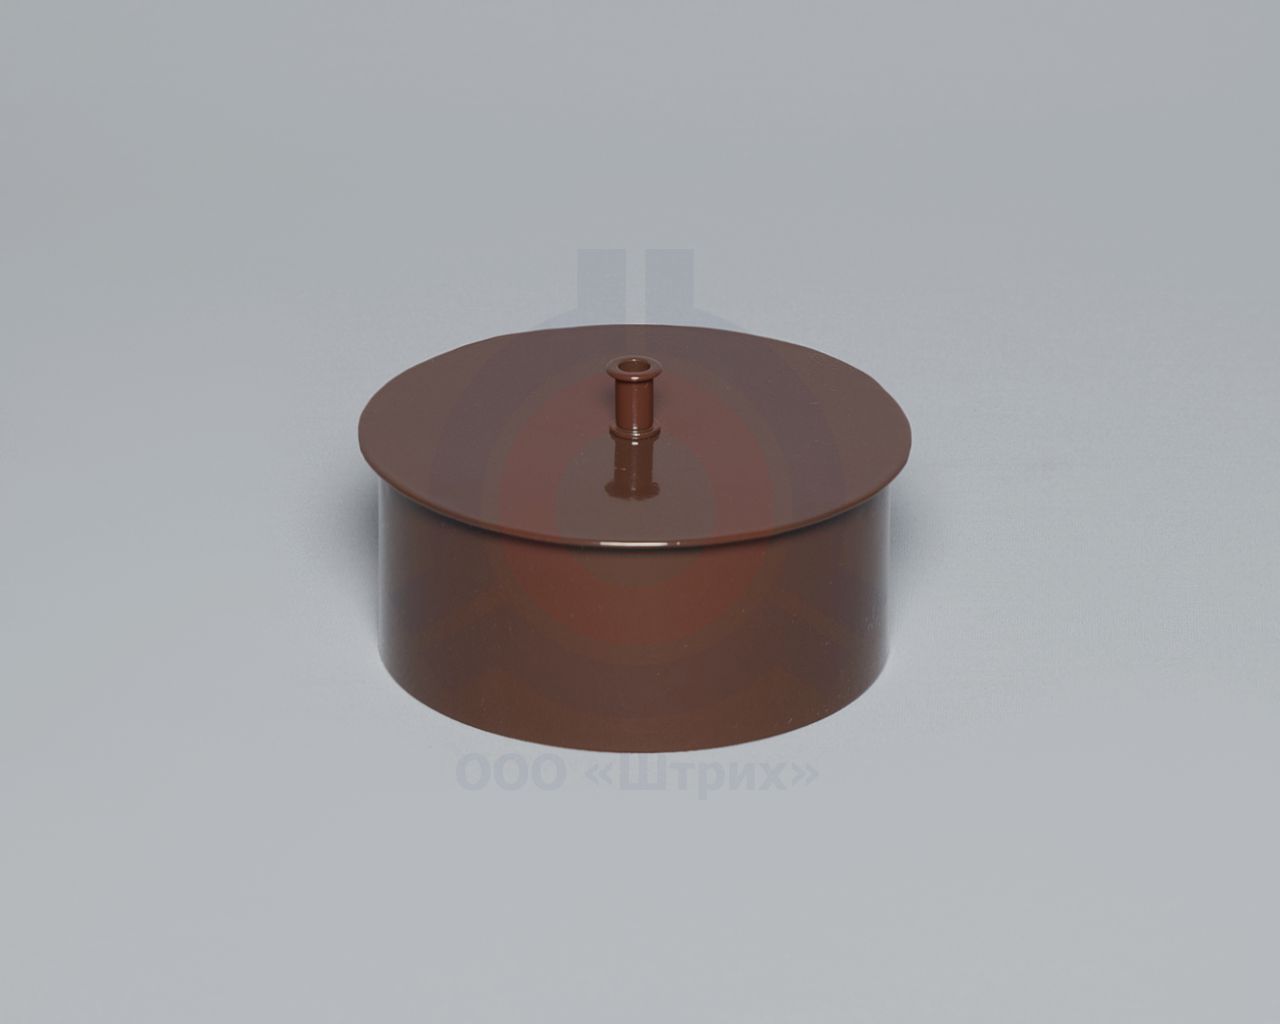 Заглушка, Ø 115 мм, сталь 08ПС S = 0,5 мм, эмаль коричневая (полная покраска), 08ПС S = 0,5 мм